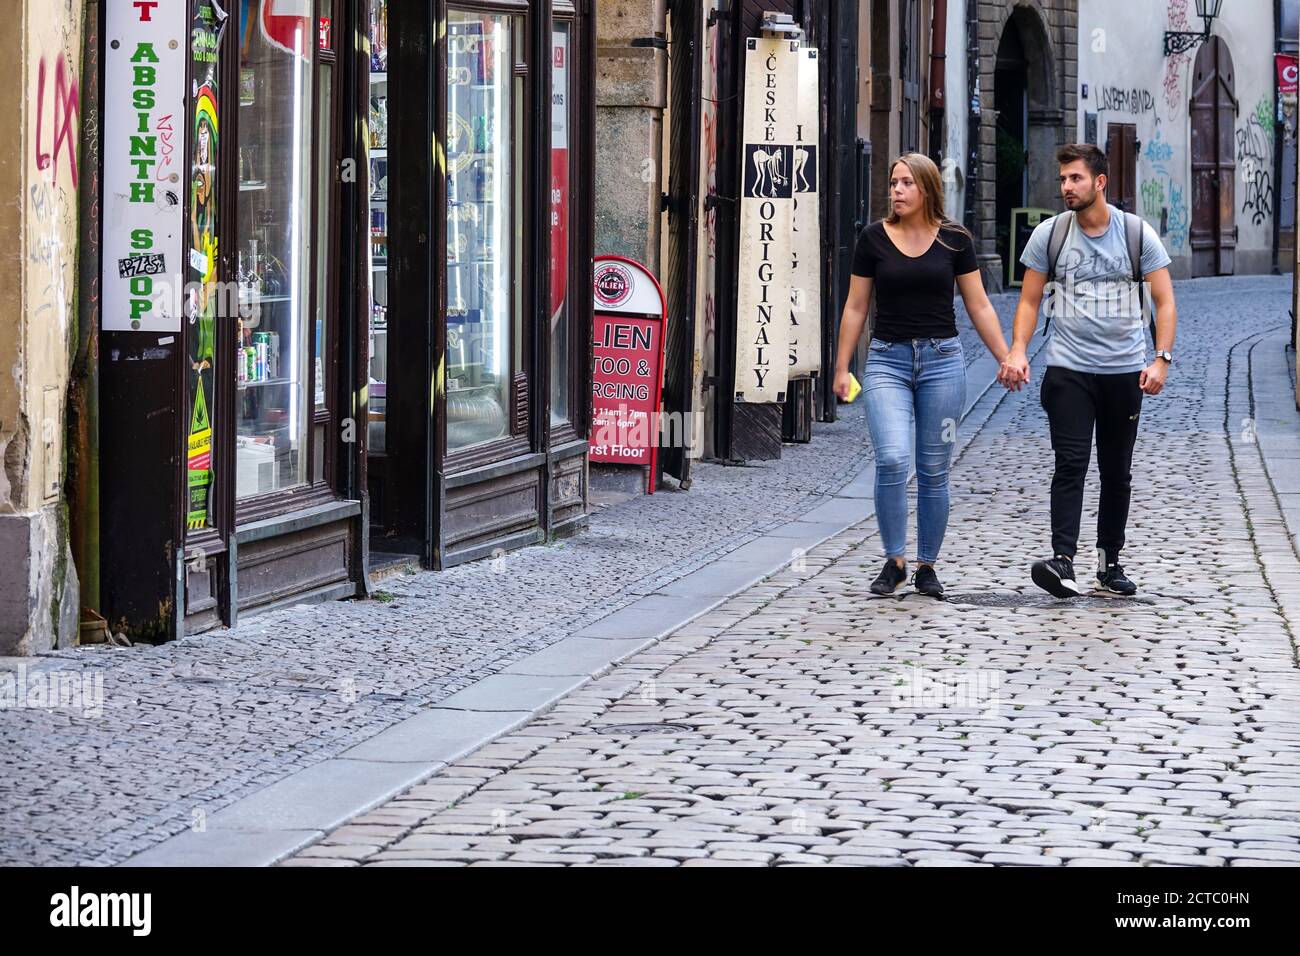 Prague rue dans la vieille ville Jilska rue couple marchant dans une rue pavée vide, rue pavée Europe jeune couple ville Prague République tchèque Banque D'Images